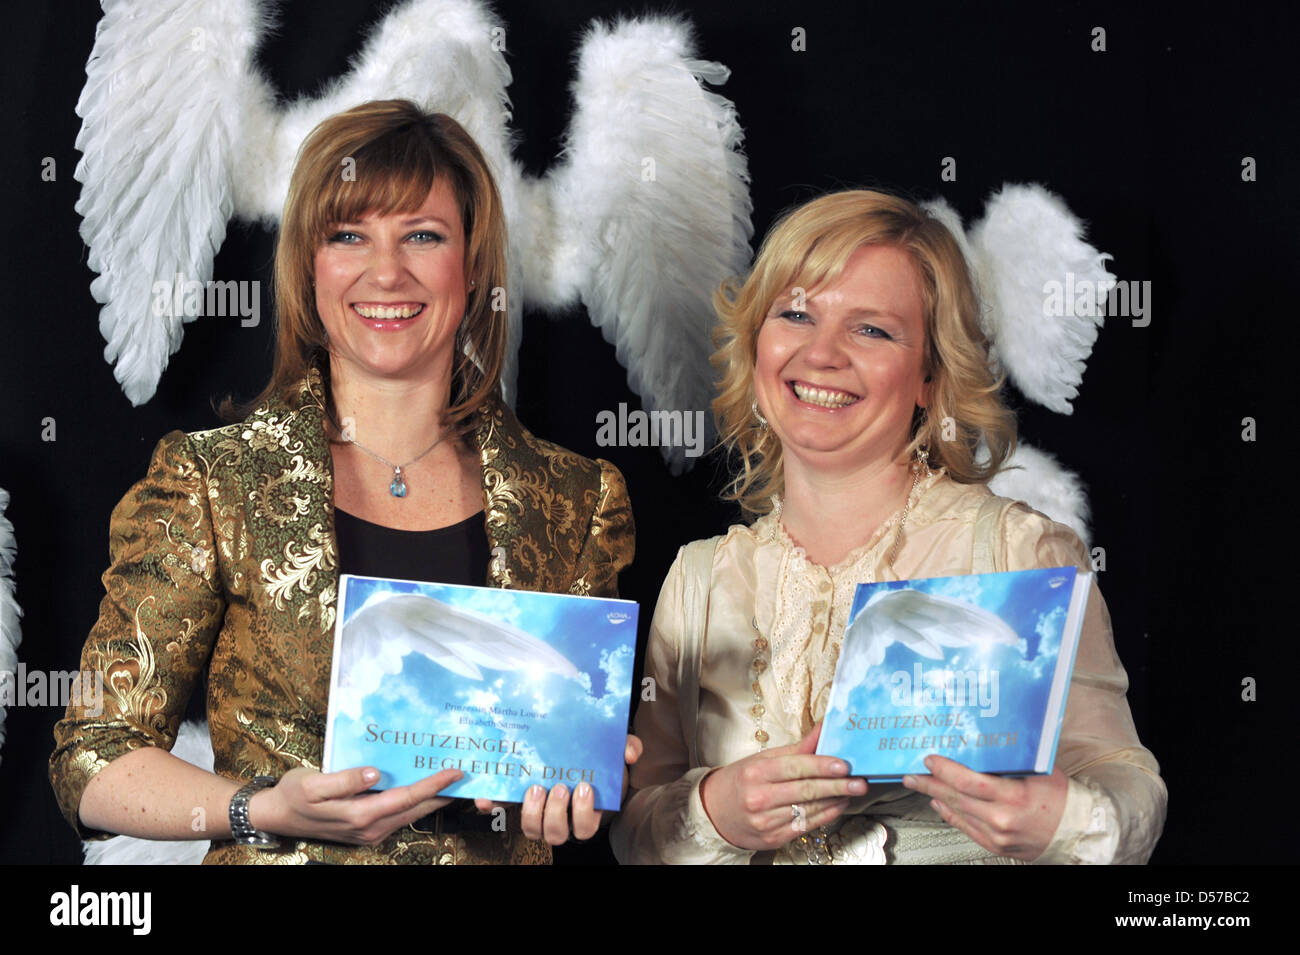 La princesse Louise Maertha de Norvège (L) et Elisabeth Samnoy (R) posent avec leur livre chutzengel "Dich begleiten' ('anges gardiens vous accompagner') au cours de l'tarvisit "talk show" à Offenburg, Allemagne, 03 mai 2010. Le talk-show est organisé par la maison d'édition Burda. Photo : PATRICK SEEGER Banque D'Images